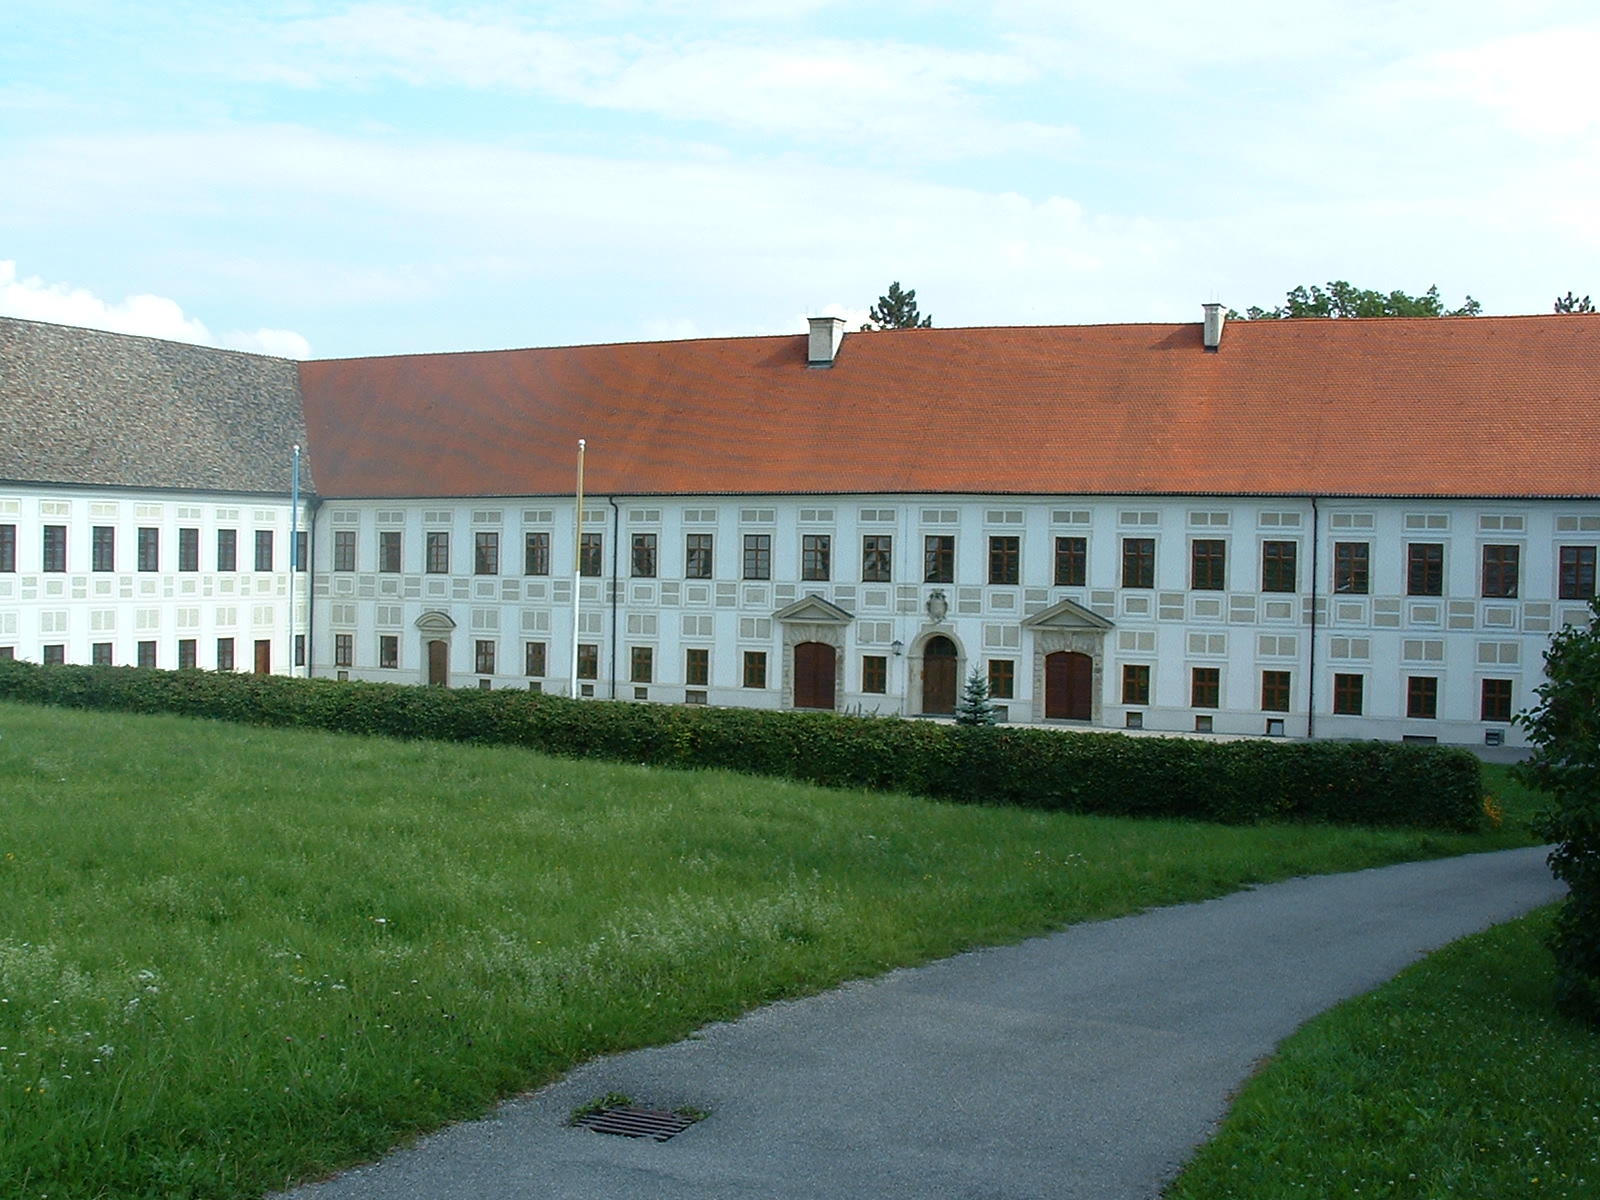 Kloster Wessobrunn gegr&uuml;ndet von Herzog Tassilo III ca. 753 - eine prachtvolle Anlage im Pfaffenwinkel